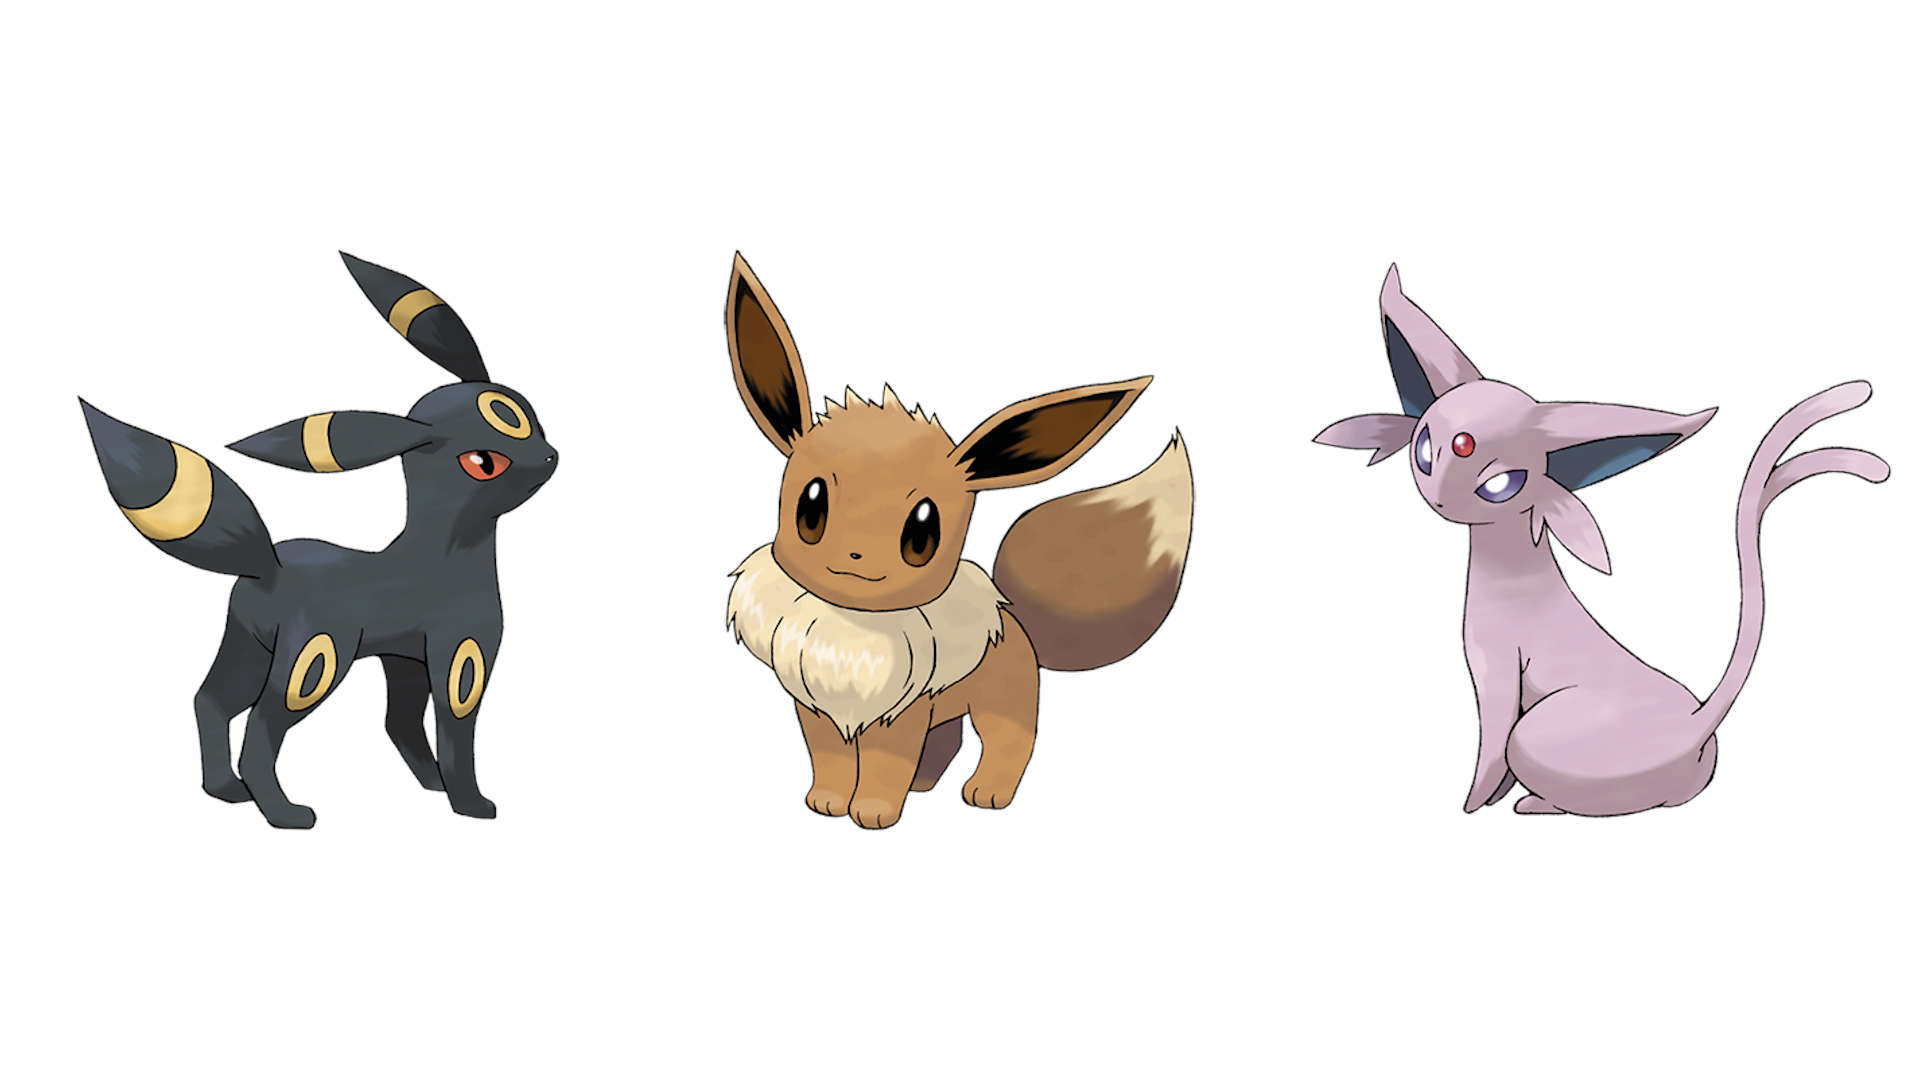 Pokémon Go Eevee Evolution - Eevee در کنار Umbreon و Espeon در برابر پس زمینه سفید